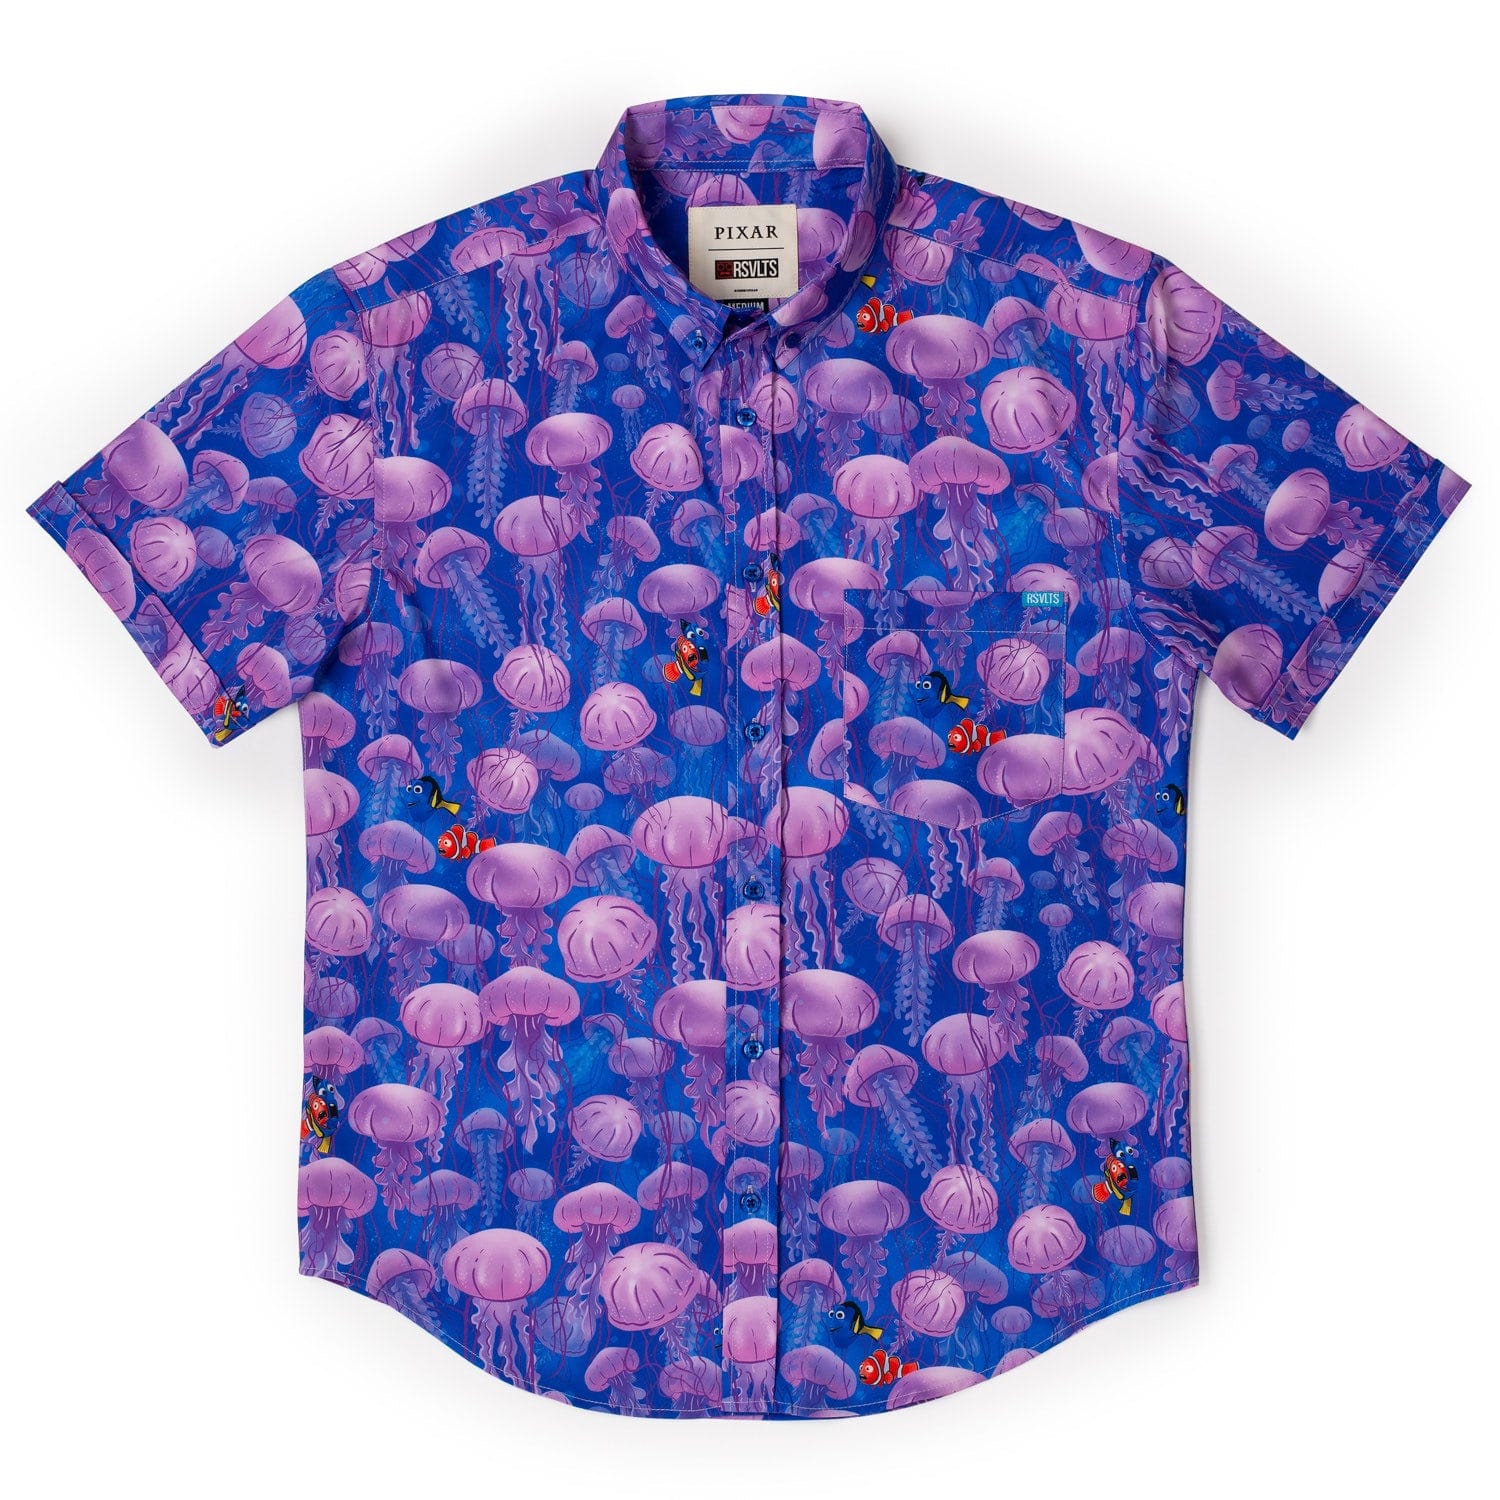 Finding Nemo Jellyfish Short Sleeve Shirt